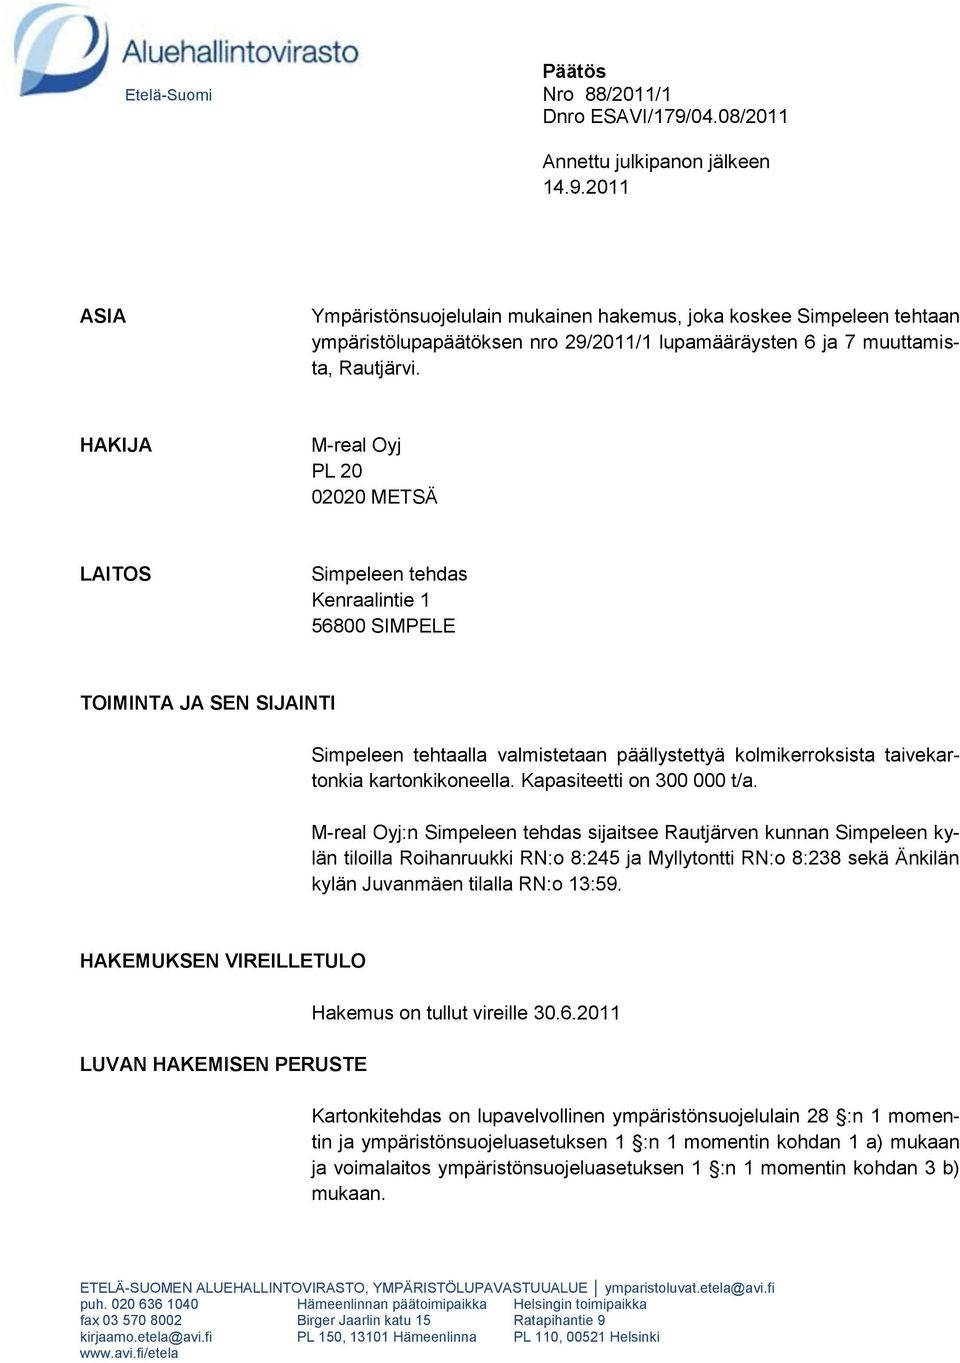 2011 ASIA Ympäristönsuojelulain mukainen hakemus, joka koskee Simpeleen tehtaan ympäristölupapäätöksen nro 29/2011/1 lupamääräysten 6 ja 7 muuttamista, Rautjärvi.